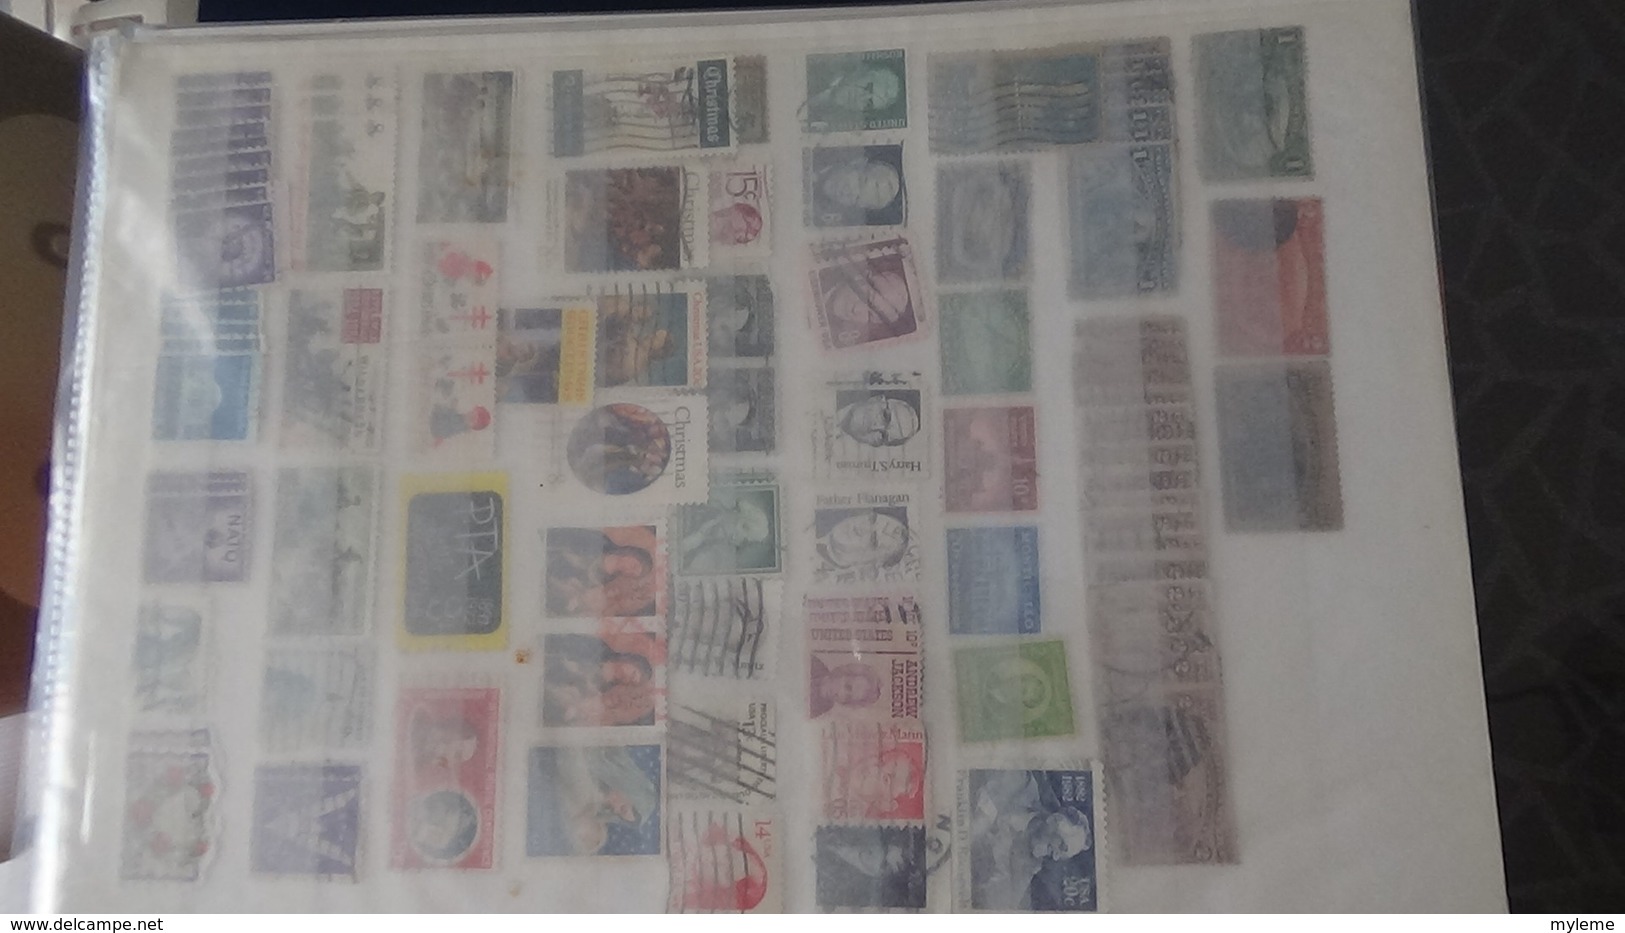 Collection oblitérés des Etats Unis en timbres, enveloppes, courriers, cartes postales ... !!!